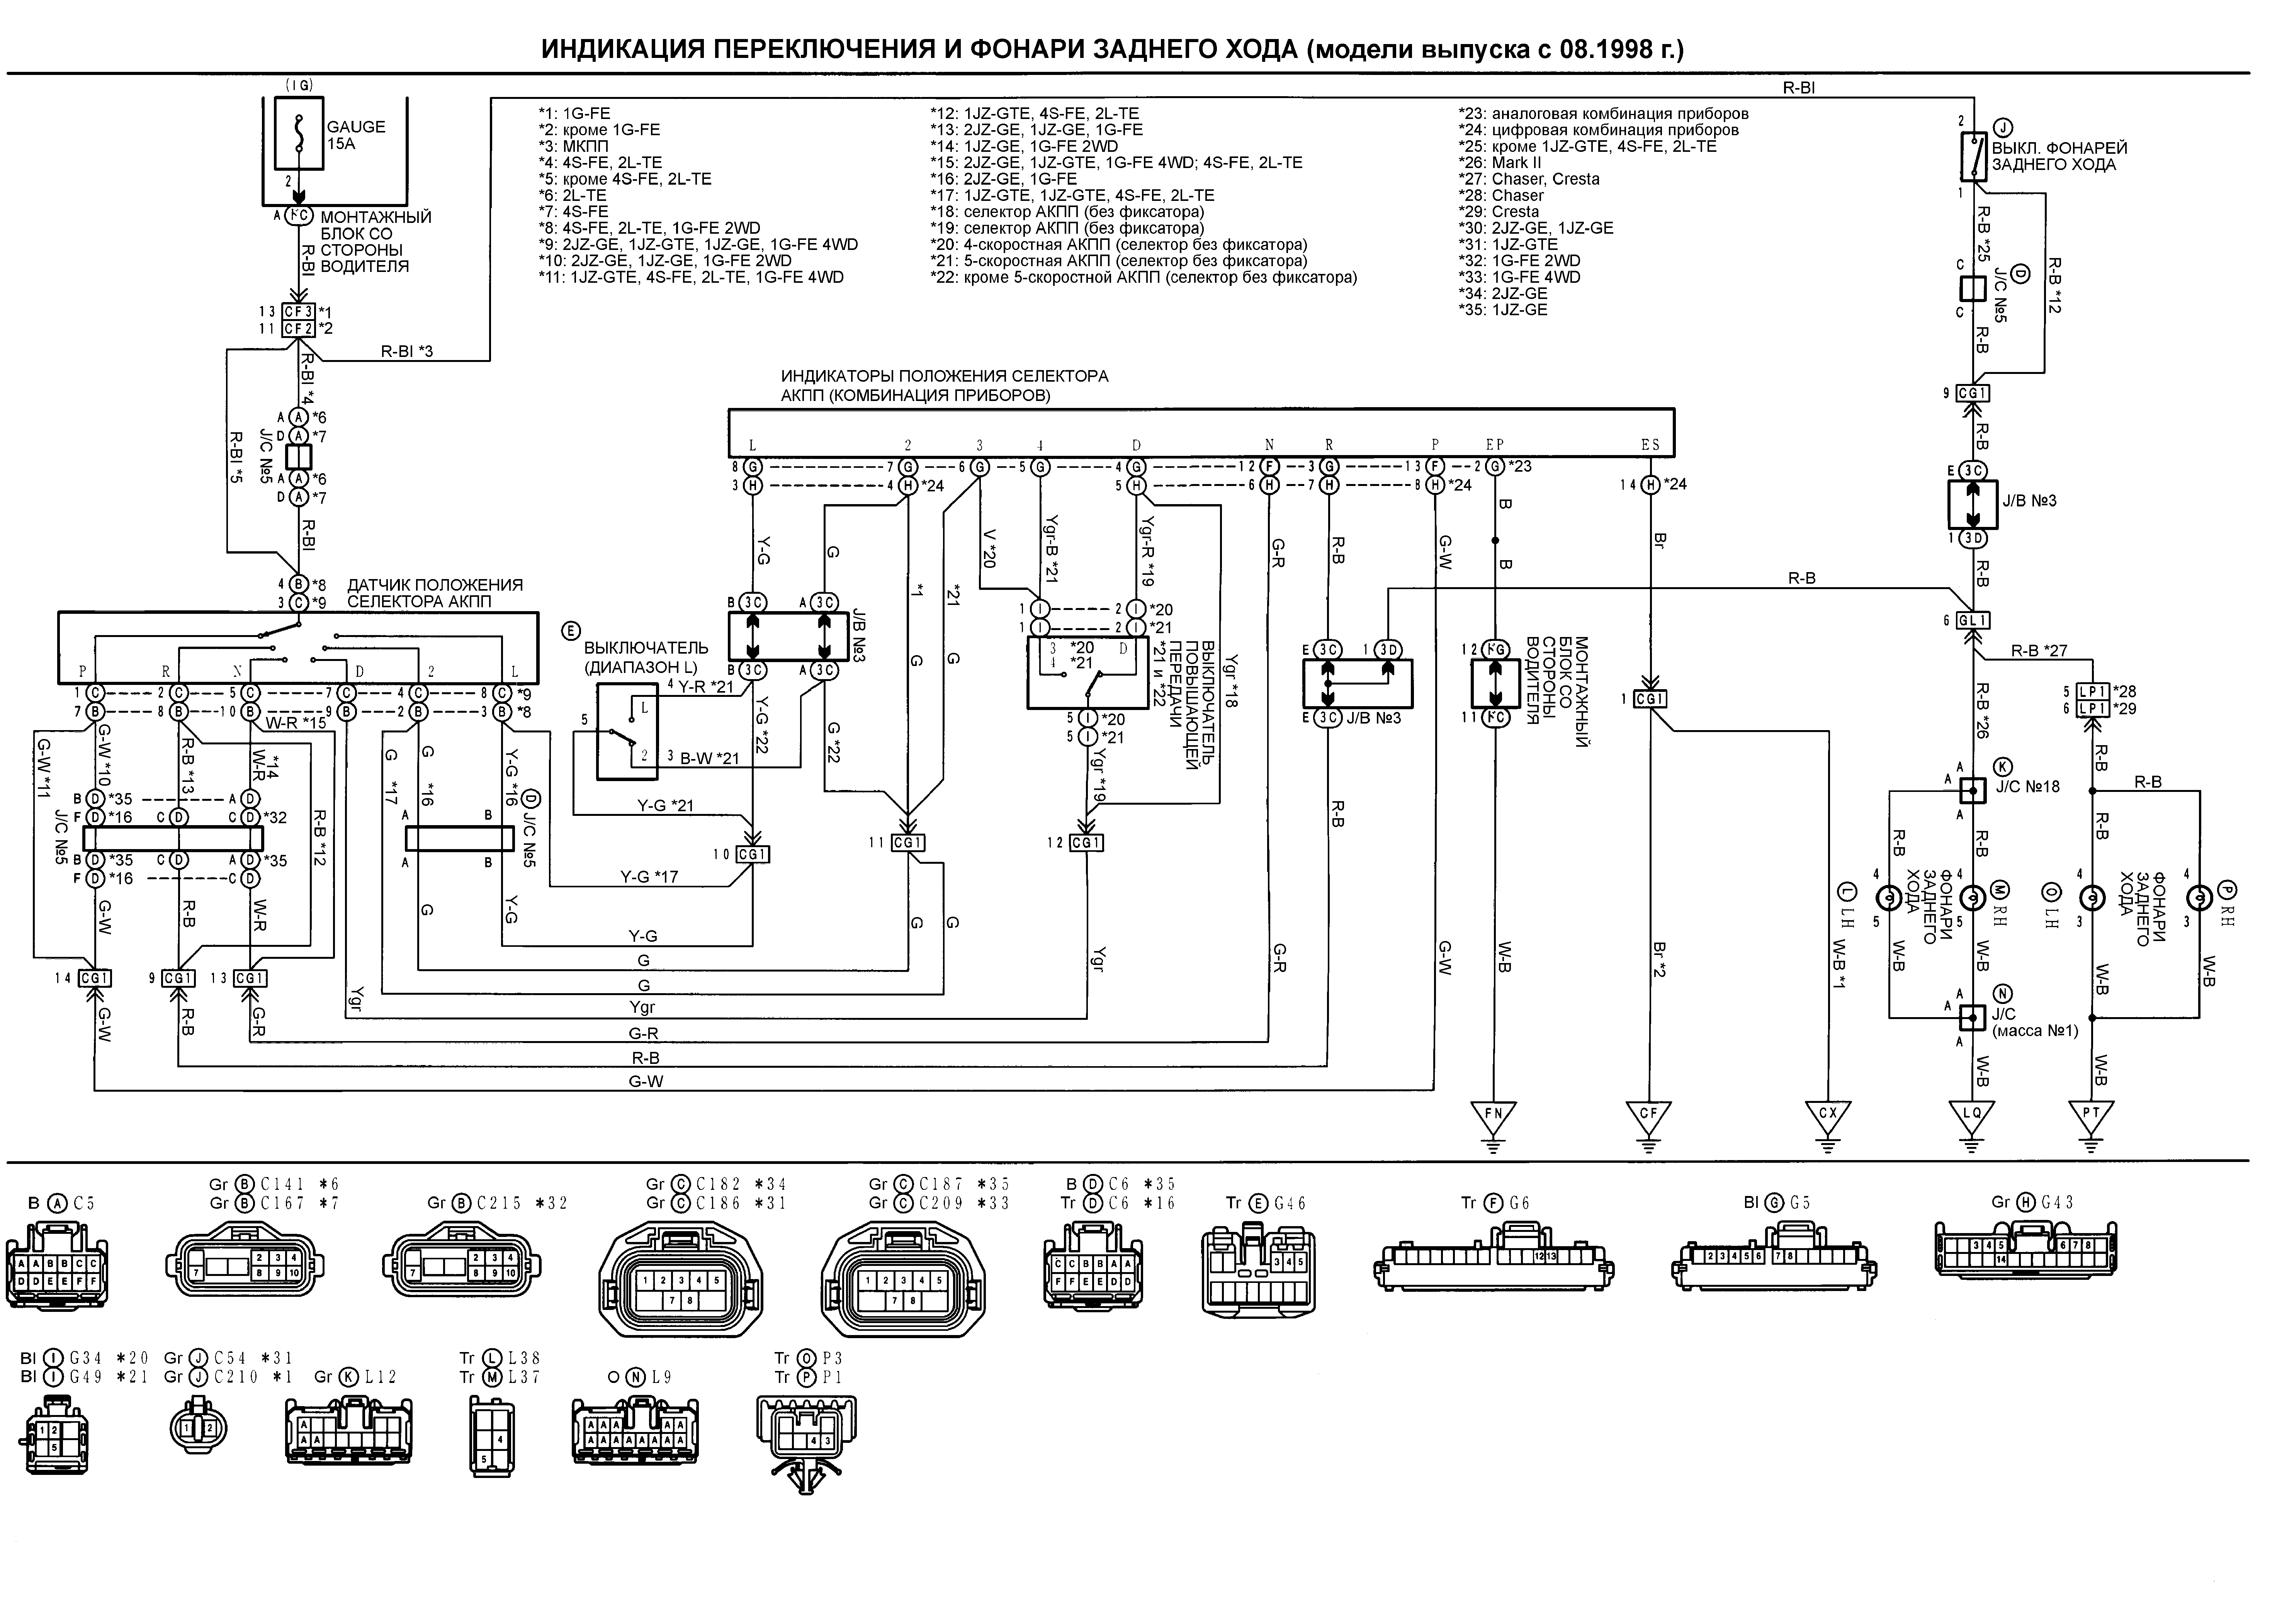 Индикация переключения и фонари заднего хода Toyota MARK II CHASER CRESTA с 08.1998